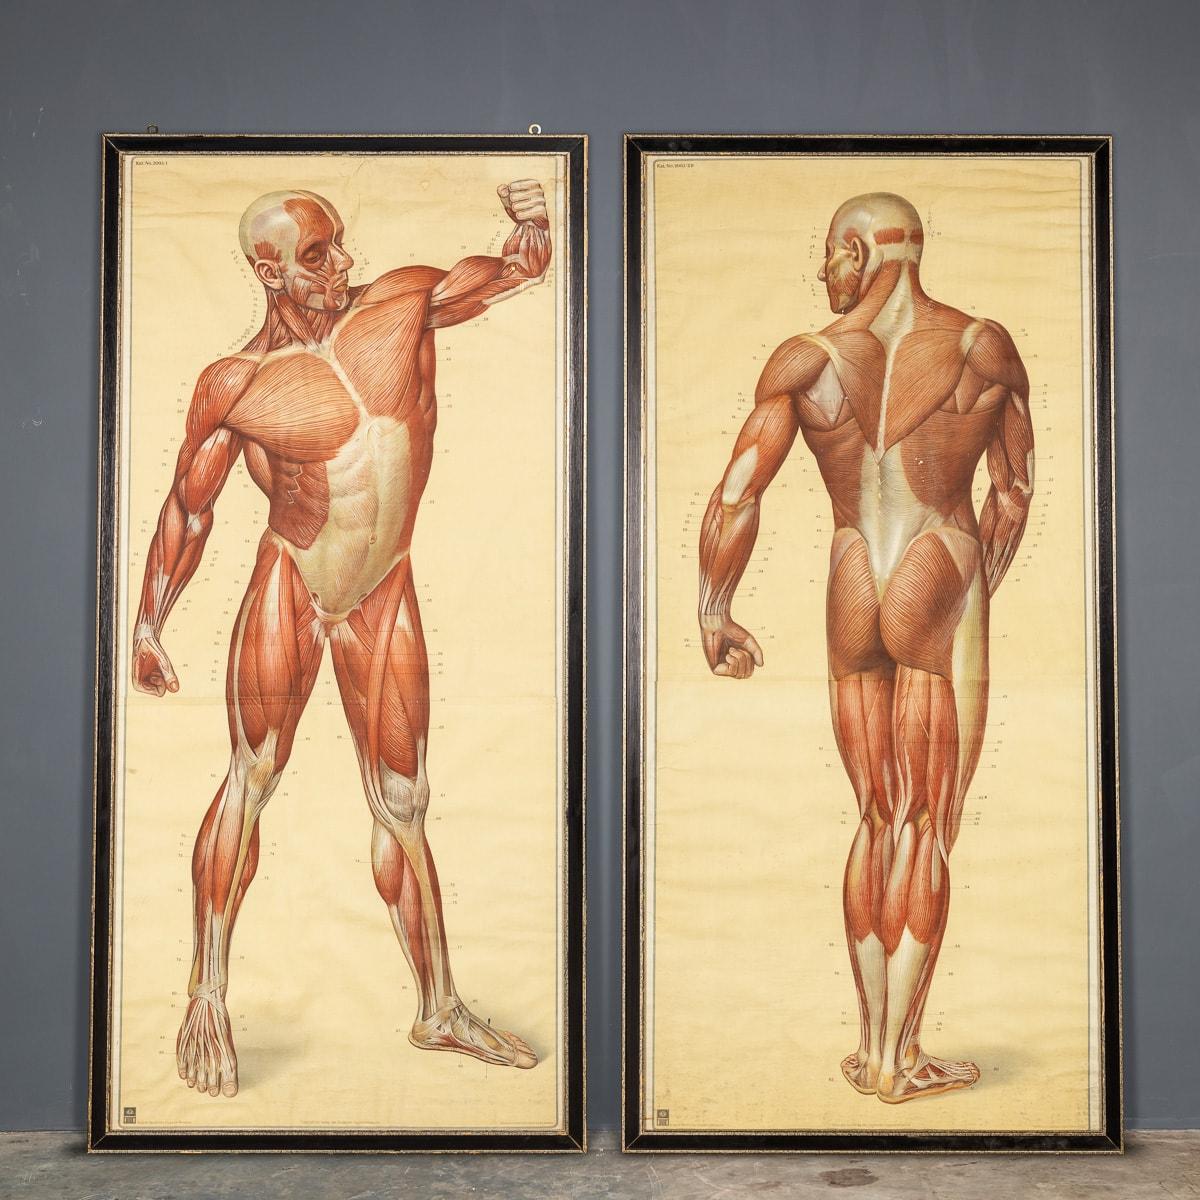 Dieses Paar anatomischer Bilder gehört zu einer Serie namens Naturalien und Lehrmittel Anatomie und Biologie von Tanck & Wegelin, die als die genauesten anatomischen Karten ihrer Zeit gelten. Dieses Paar Muskelaufbaukarten wurde für das Deutsche